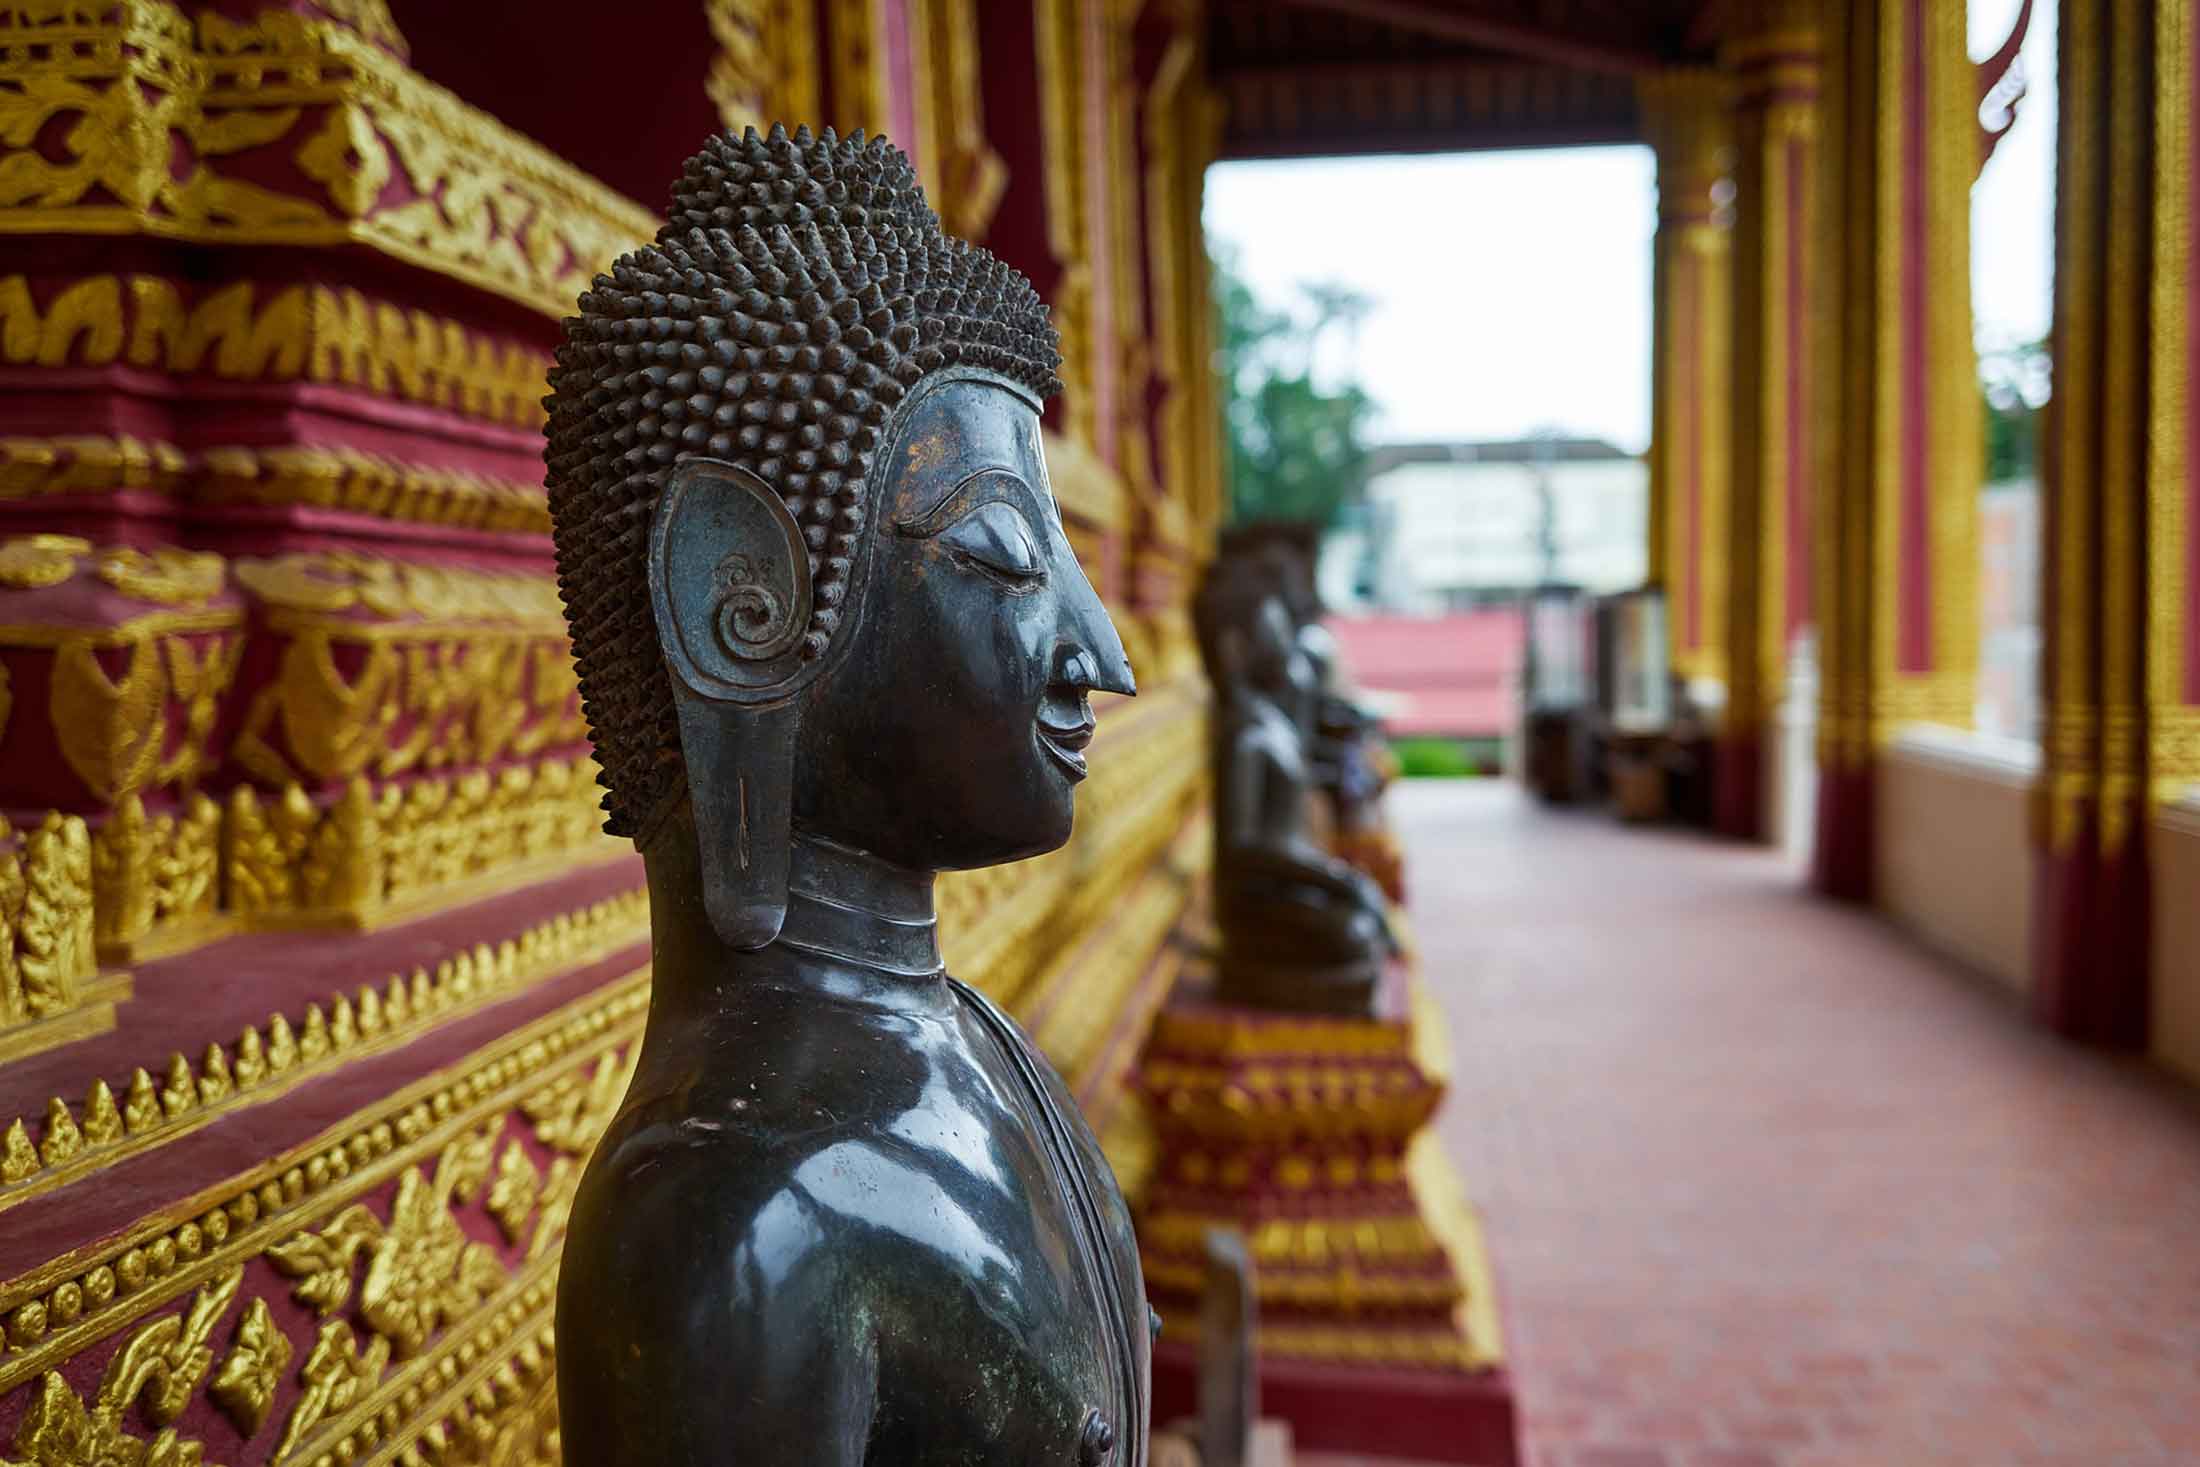 Que faire et voir à Vientiane? Top 10 des activités